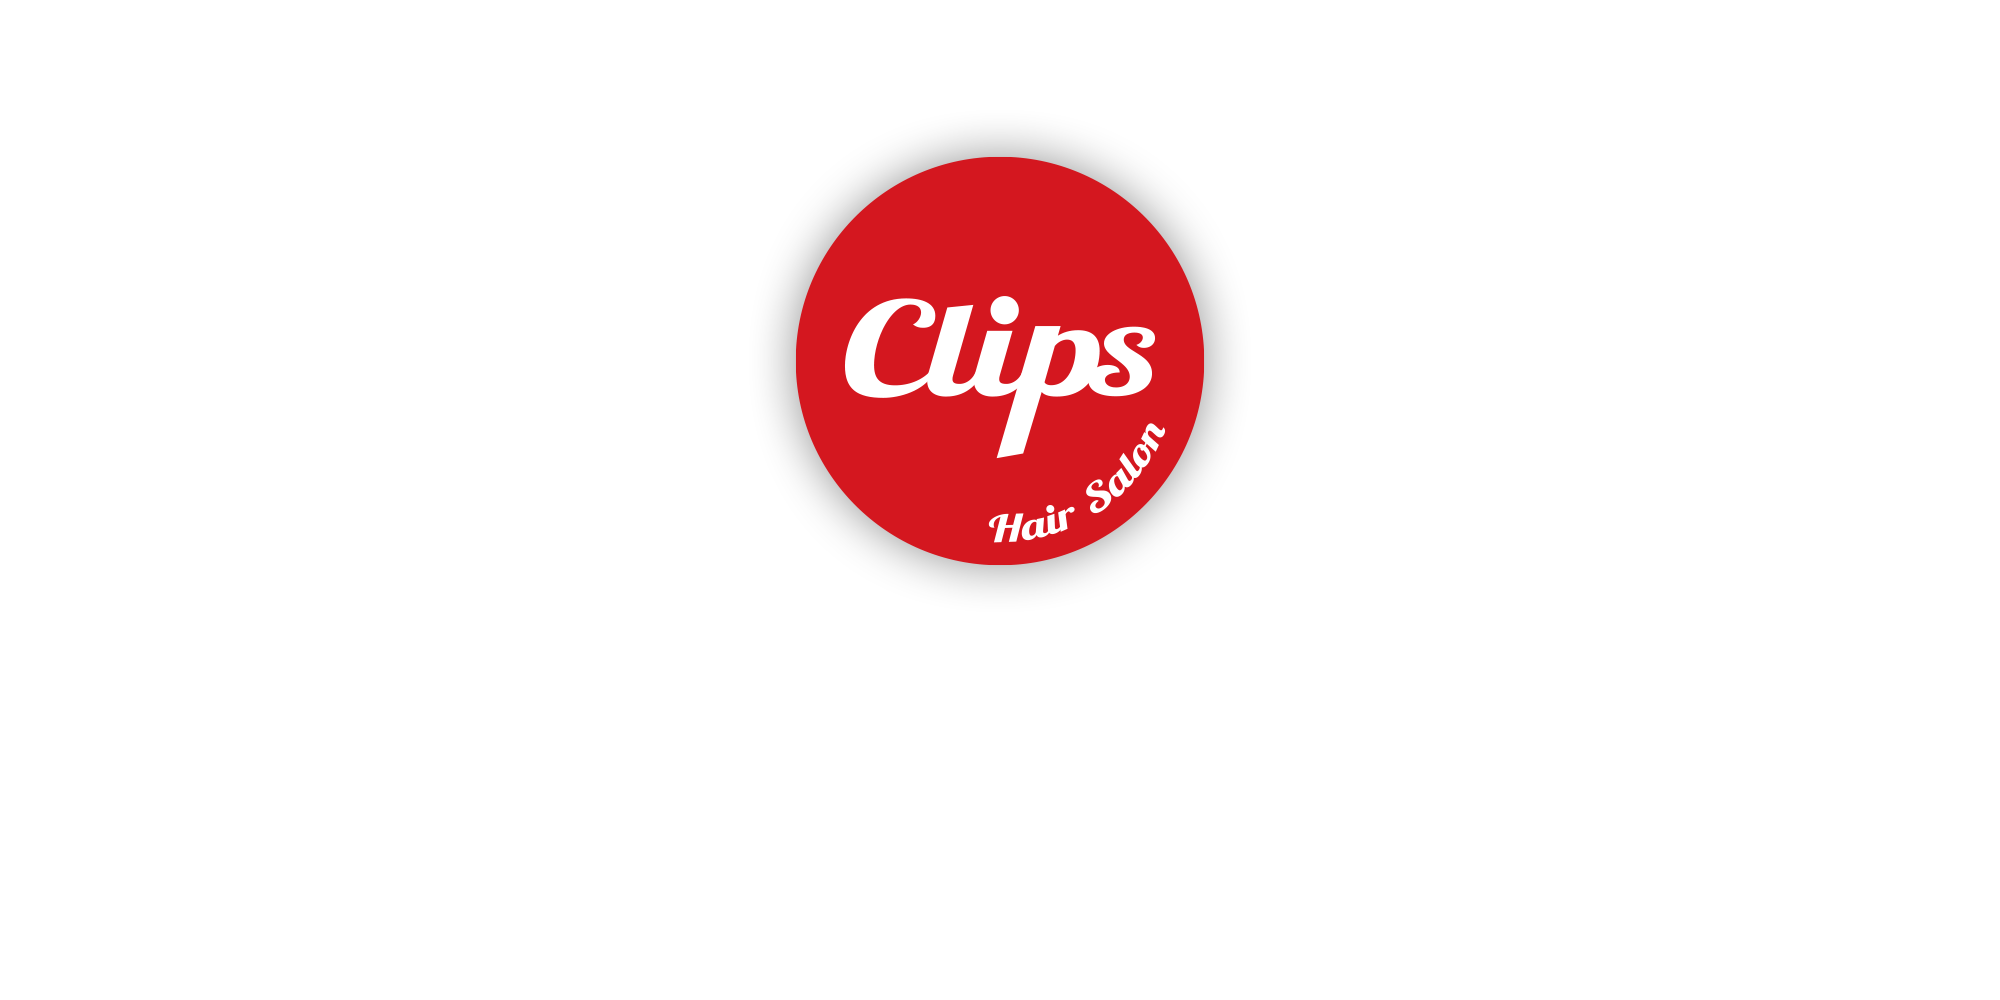 Clips クリップス アクセス ACCESS